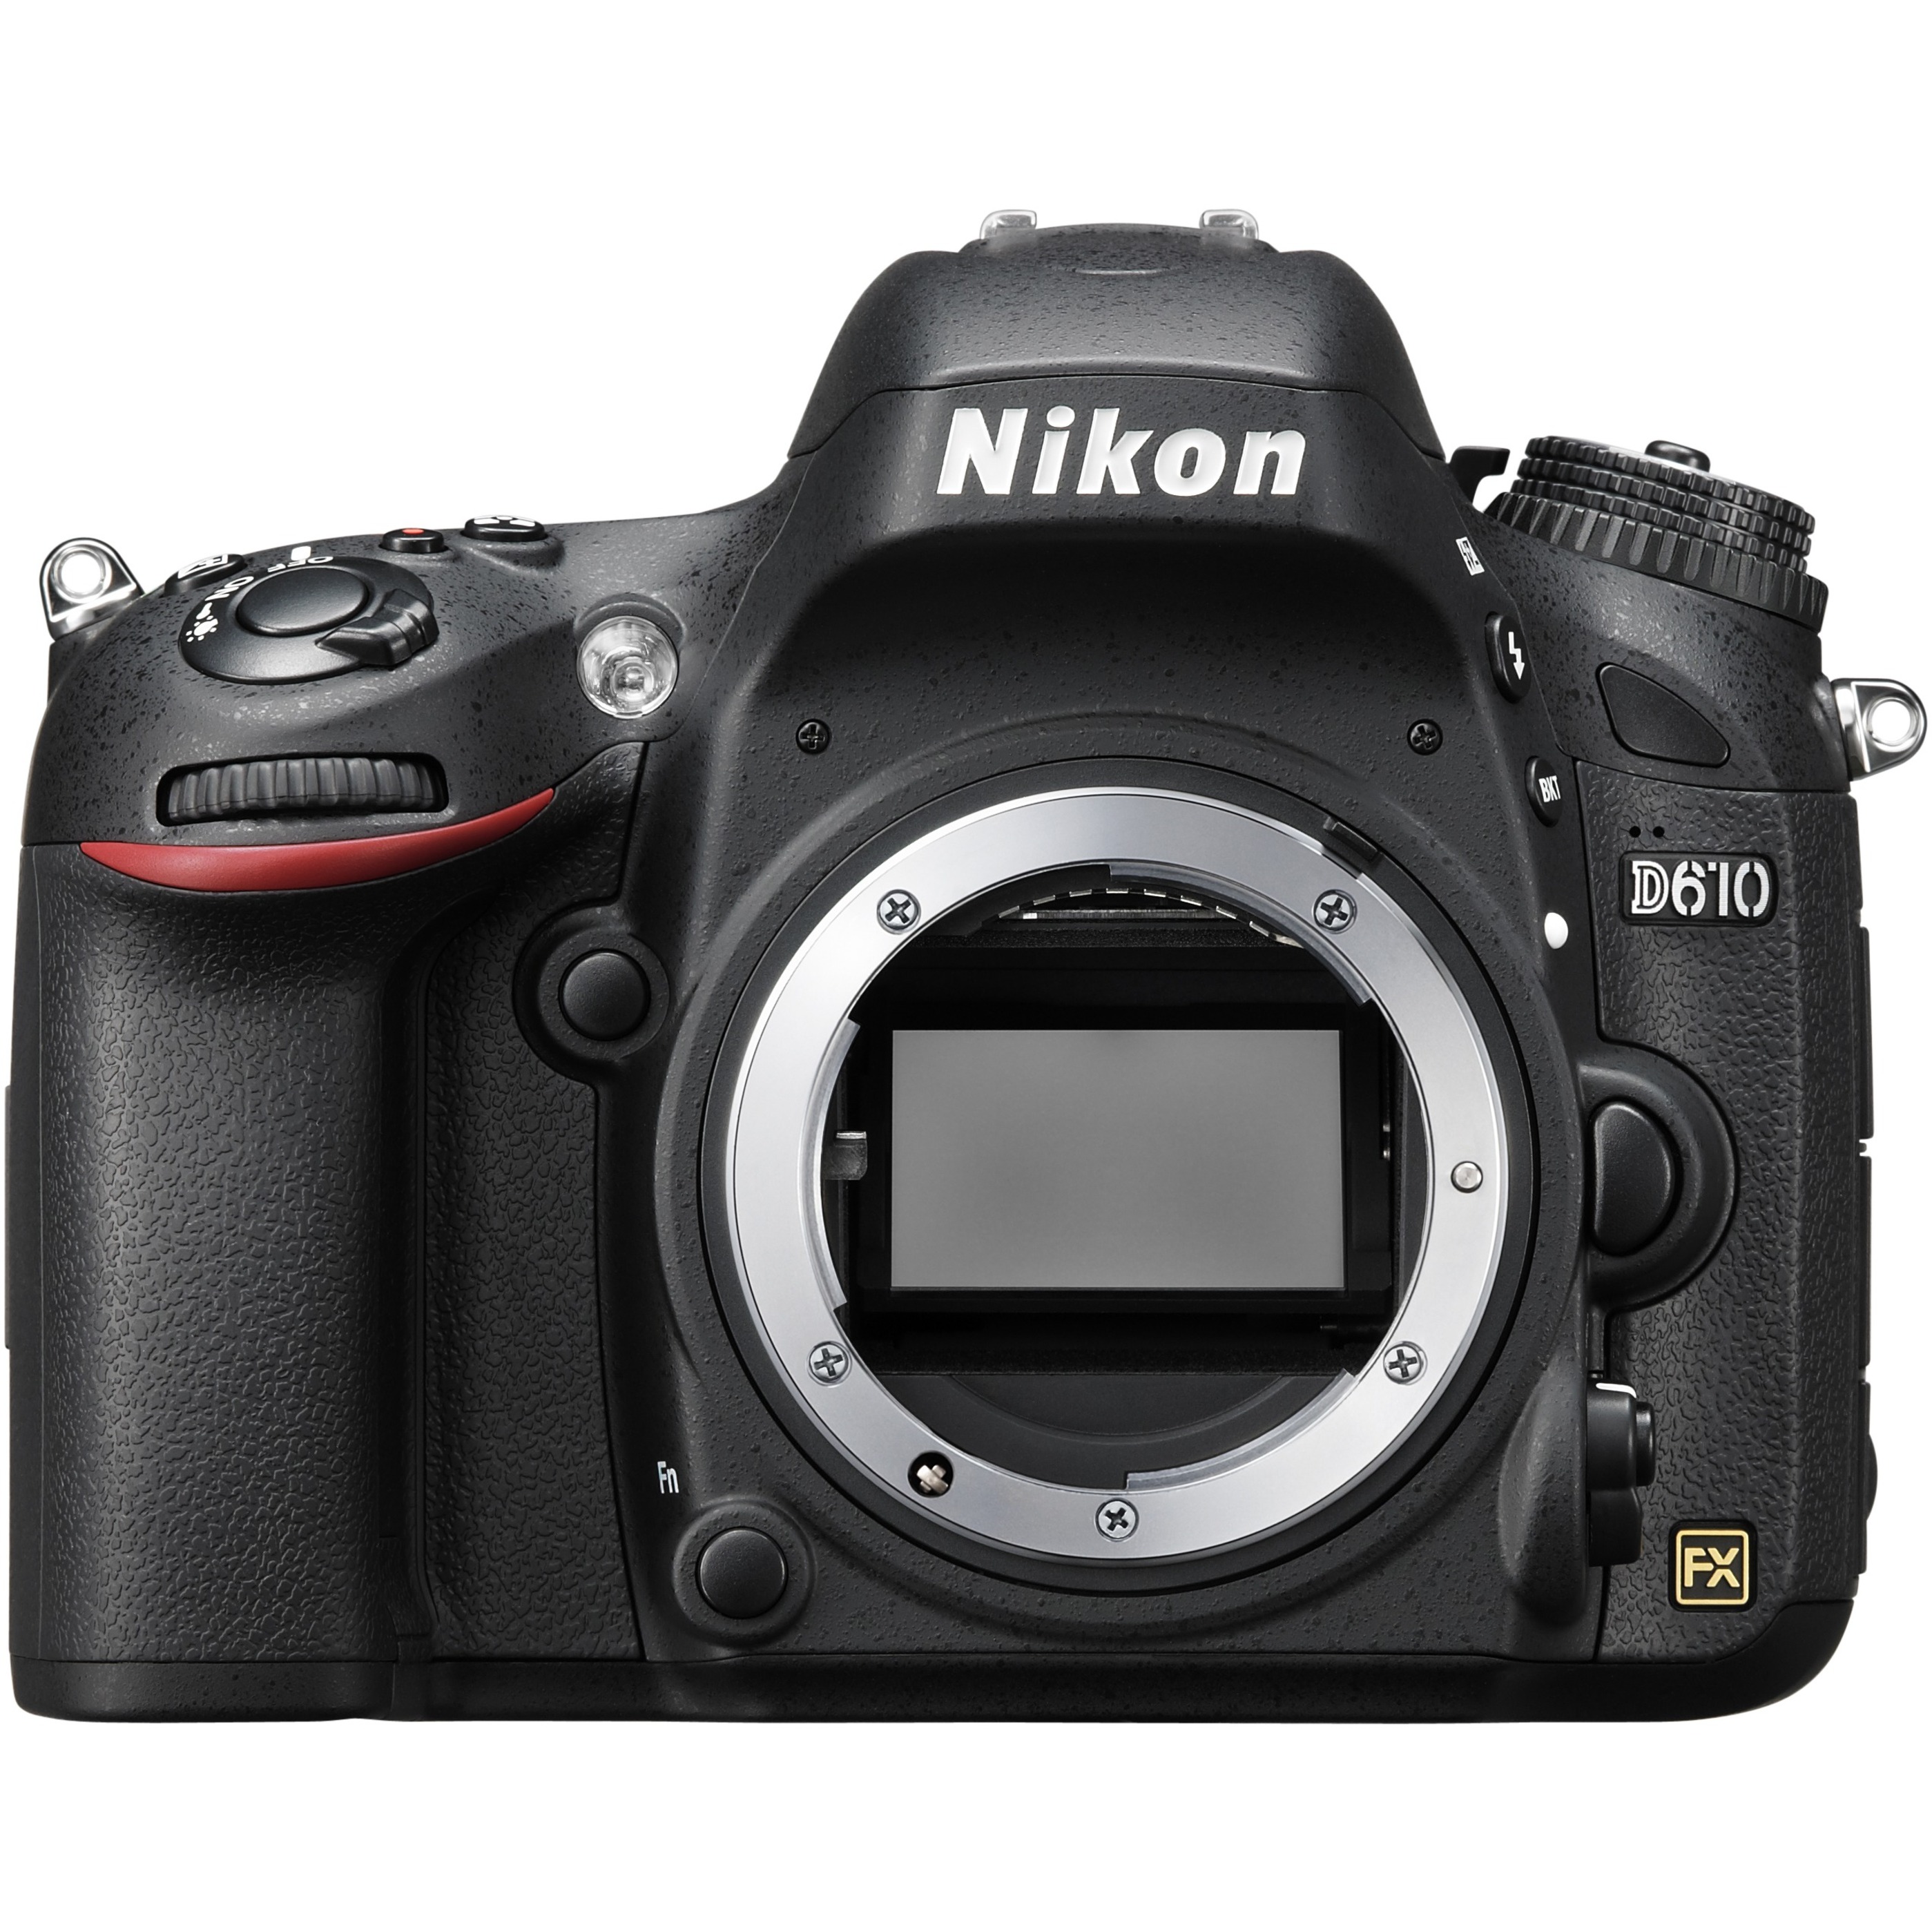 Nikon D610 24.3 Megapixel Digital SLR Camera Body Only - image 1 of 4